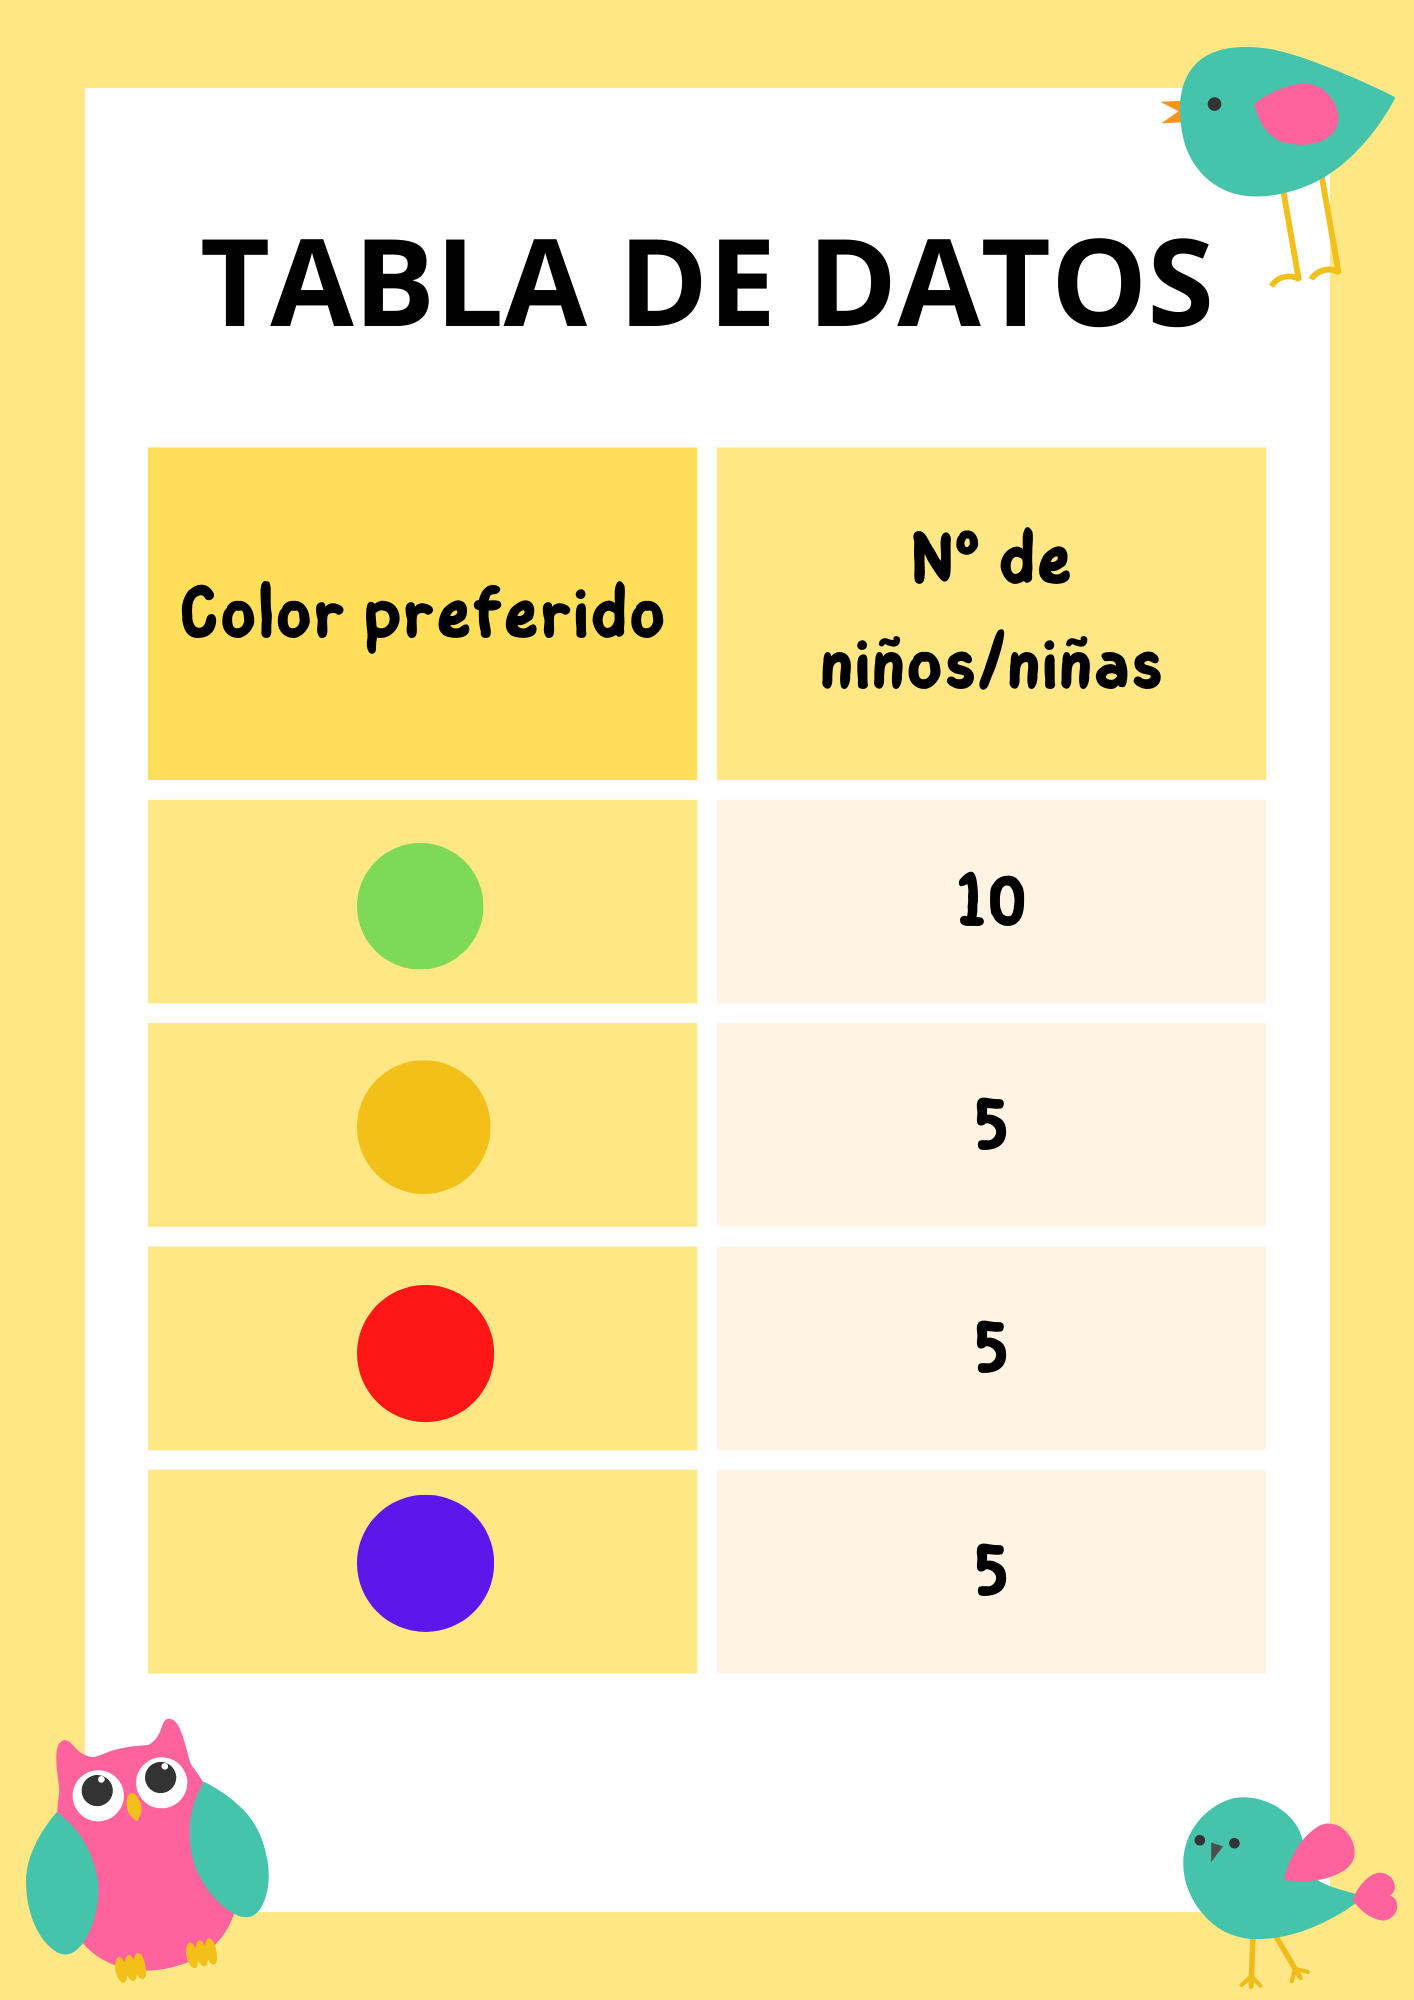 La imagen muestra una tabla de datos con dos columnas y cinco filas